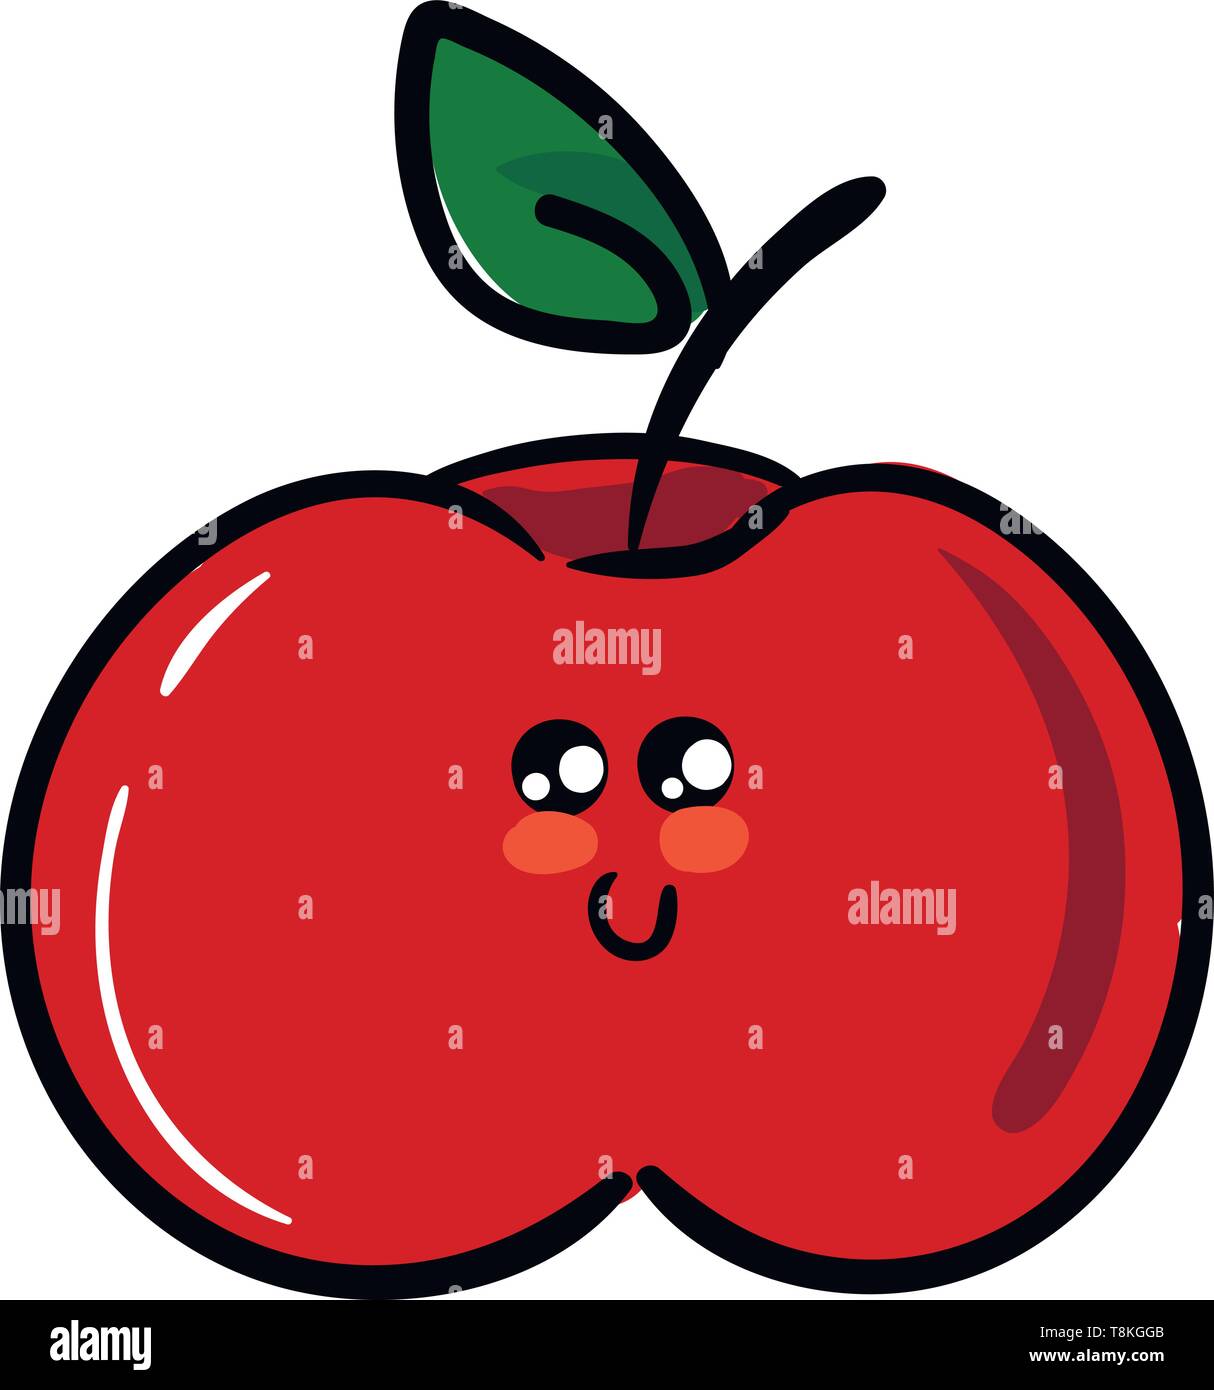 Apple ist runde Frucht mit roten, gelben oder grünen Haut und süßen weißlich Fleisch., Vector, Farbe, Zeichnung oder Abbildung. Stock Vektor